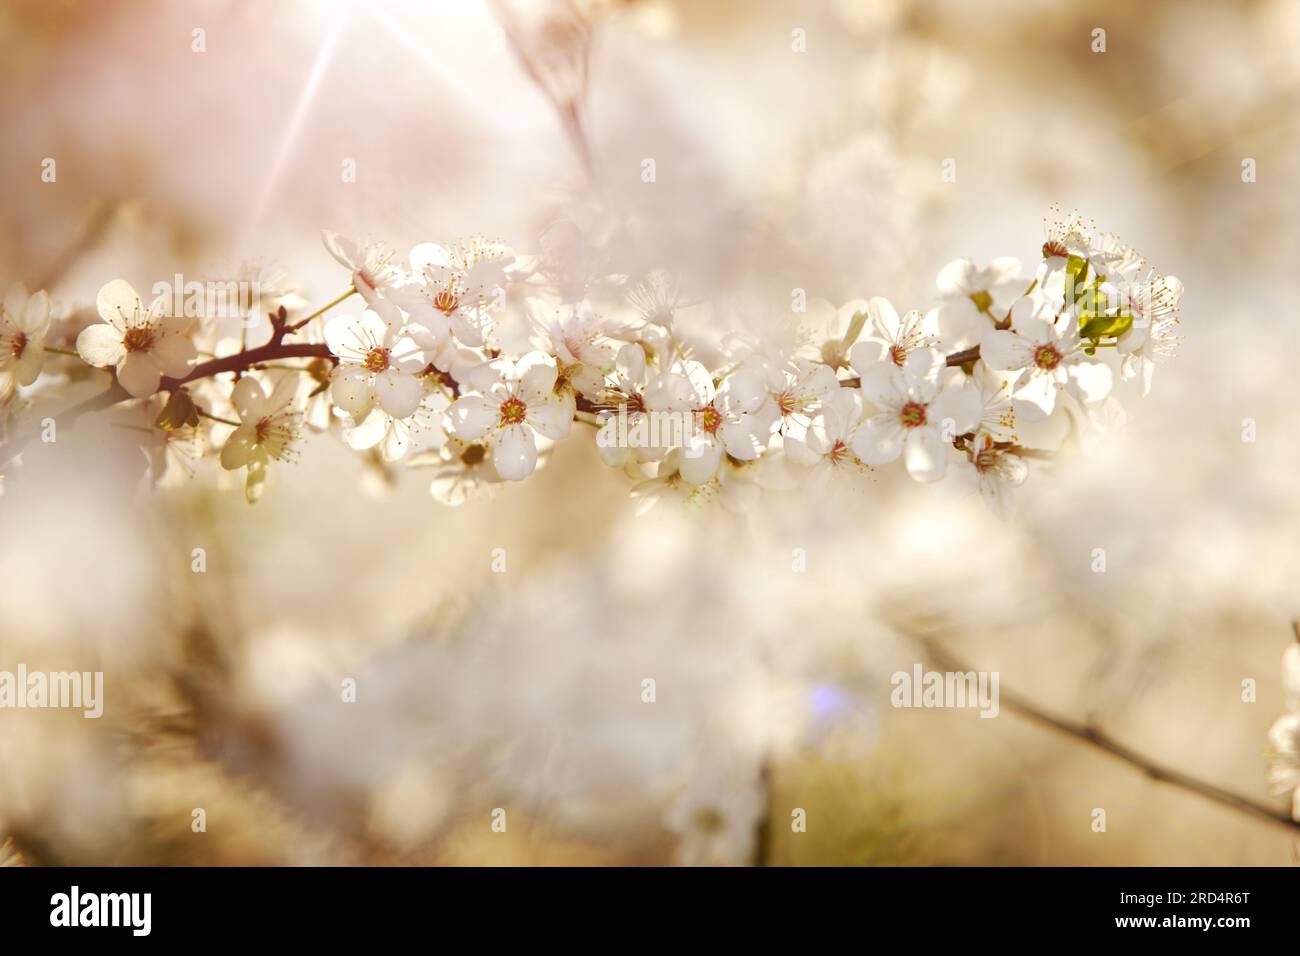 Une branche de prunier fleurie au soleil. Fleurs blanches denses d'un prunier, semblables aux fleurs de cerisier, par une journée ensoleillée Banque D'Images